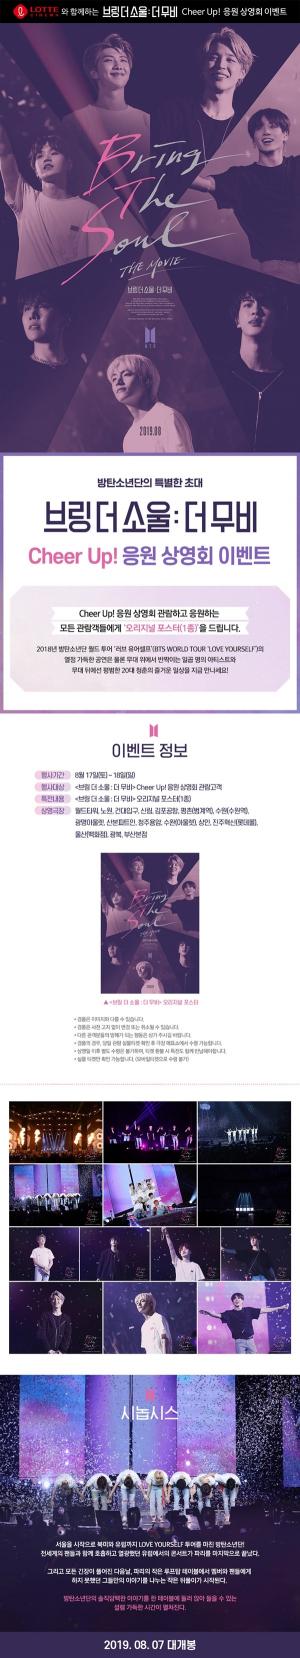 롯데시네마,  ‘브링 더 소울 : 더 무비’ 방탄소년단(BTS) 포스터·특별엽서·포토카드 굿즈 이벤트 진행